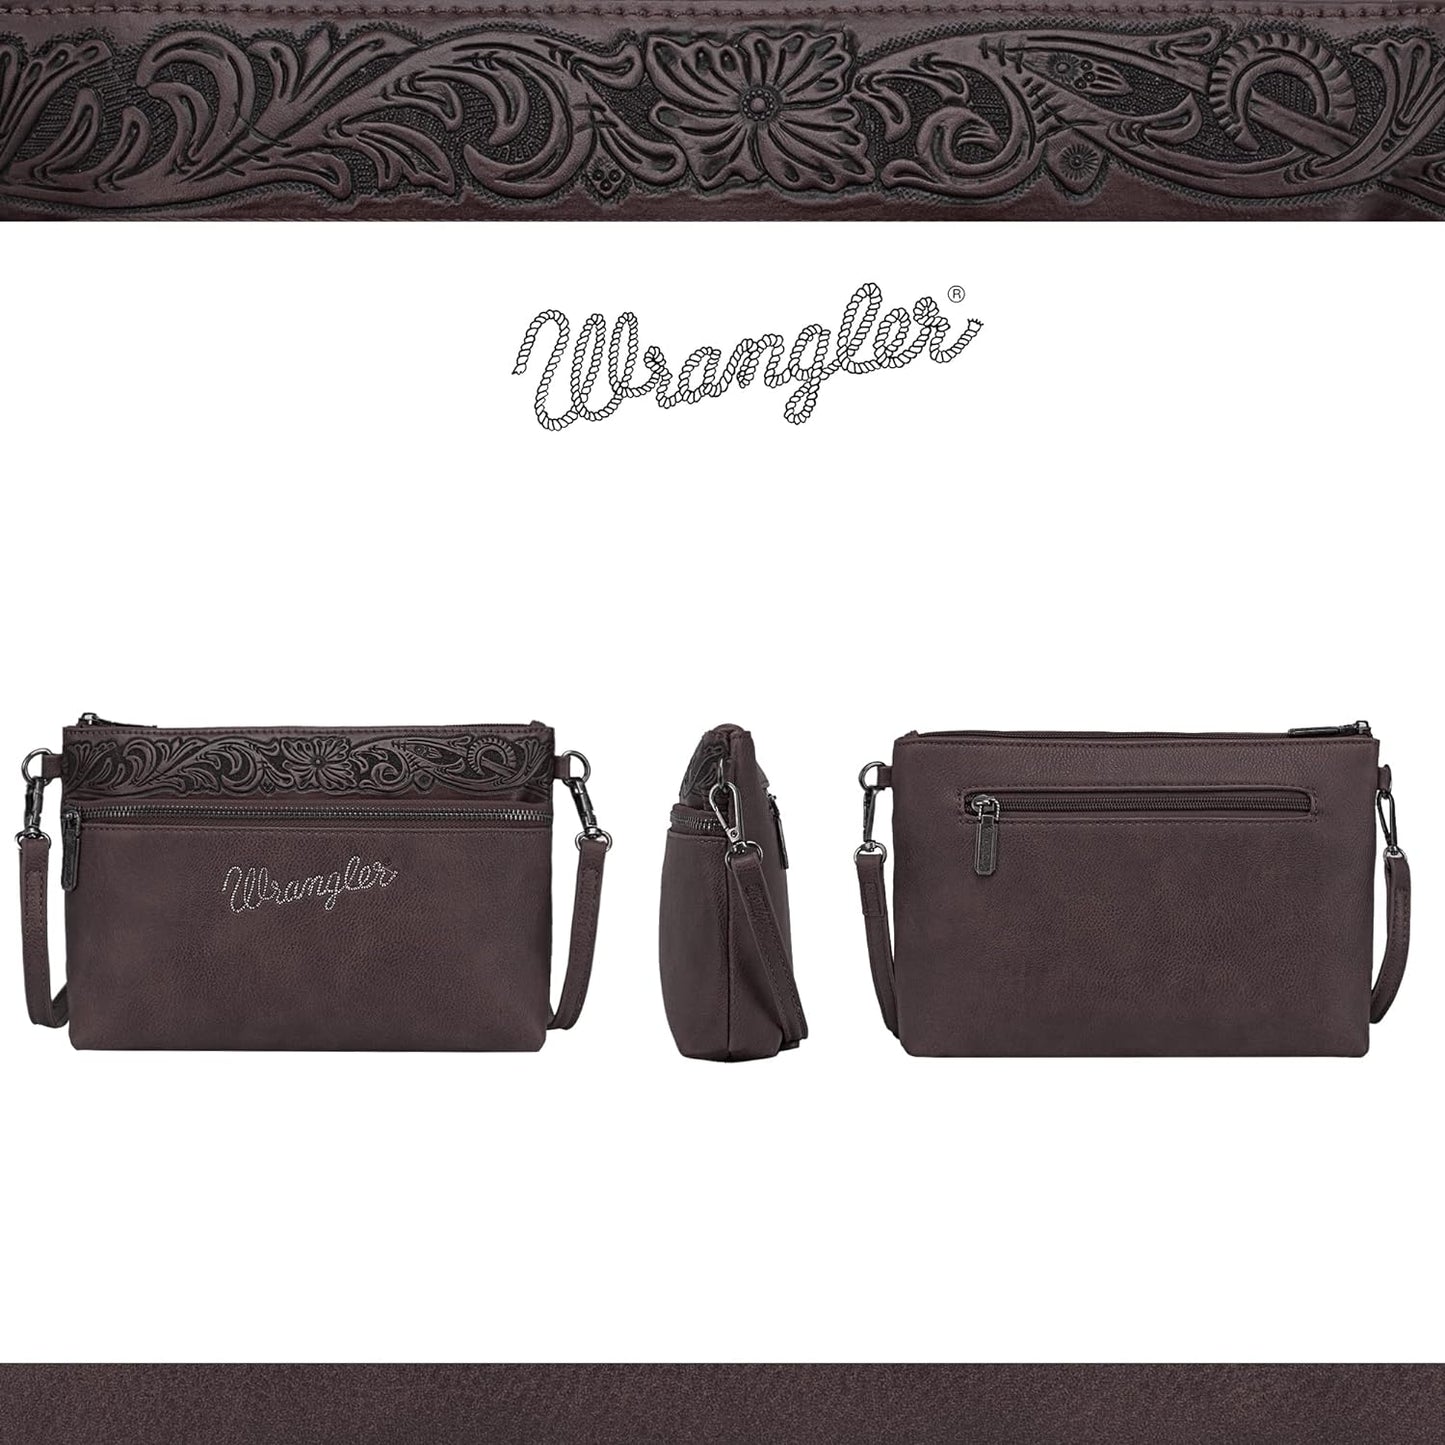 Wrangler Western Crossbody Bags for Women Clutch Wristlet Purse